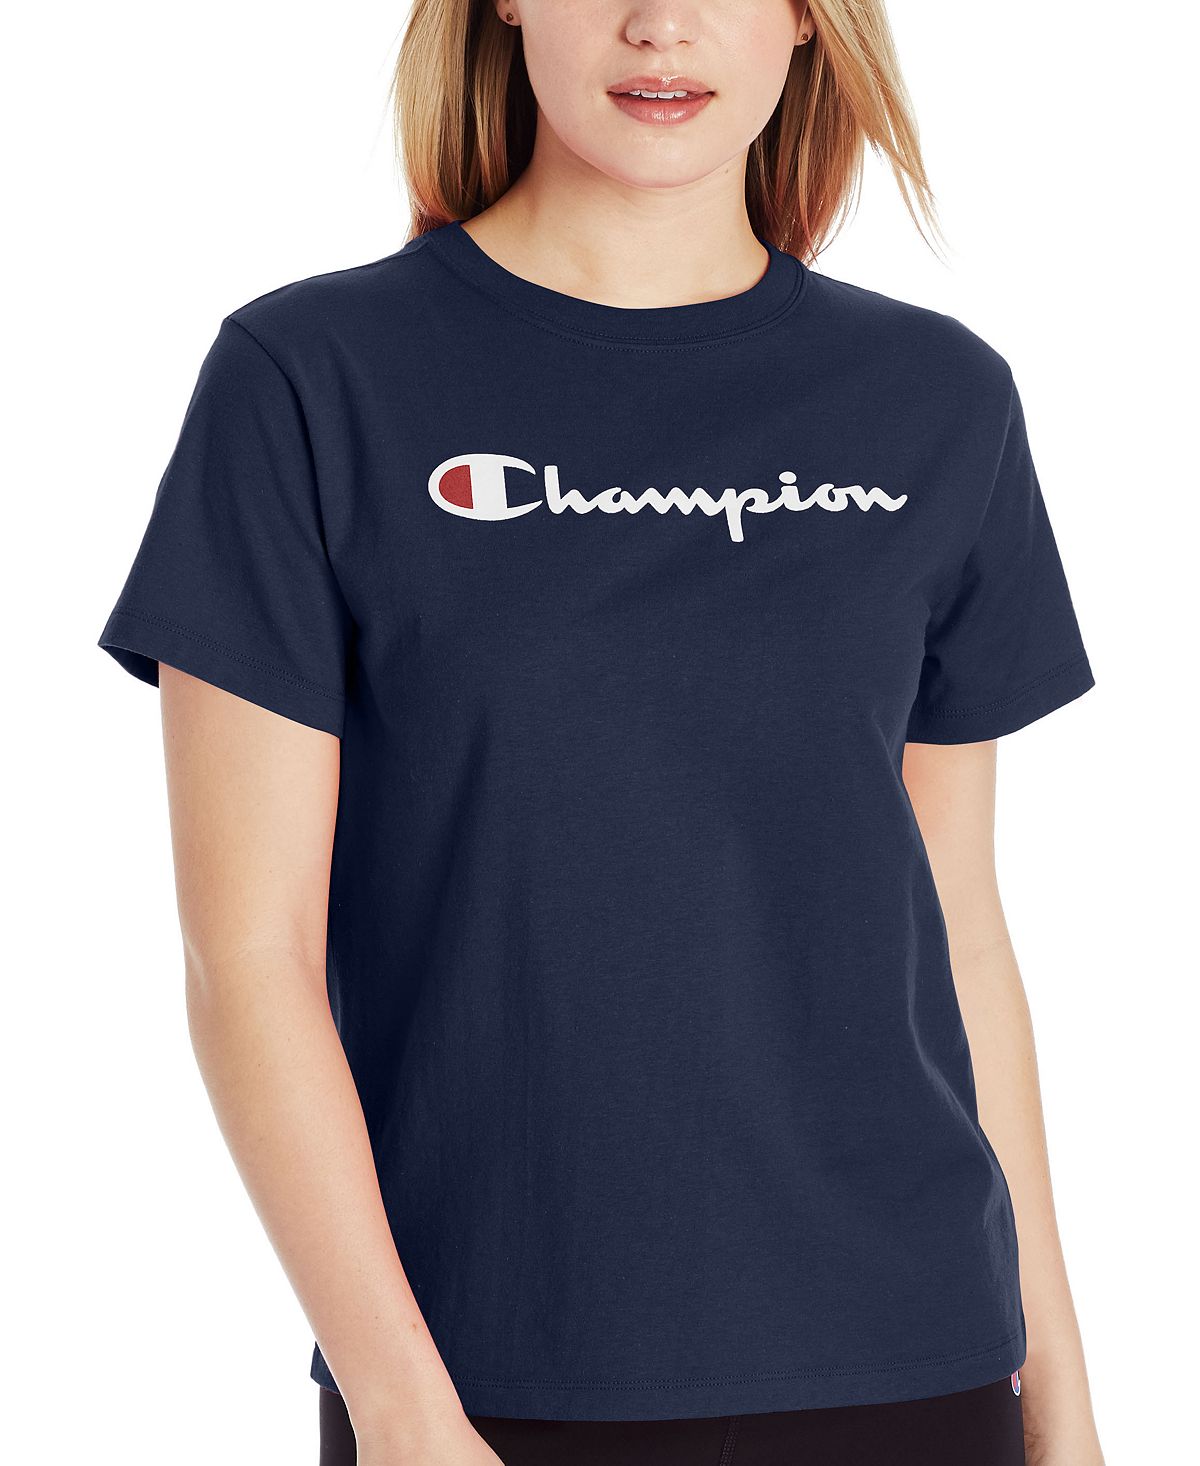 кроссовки kinetix athletic edgar navy Женская хлопковая классическая футболка с круглым вырезом и логотипом Champion